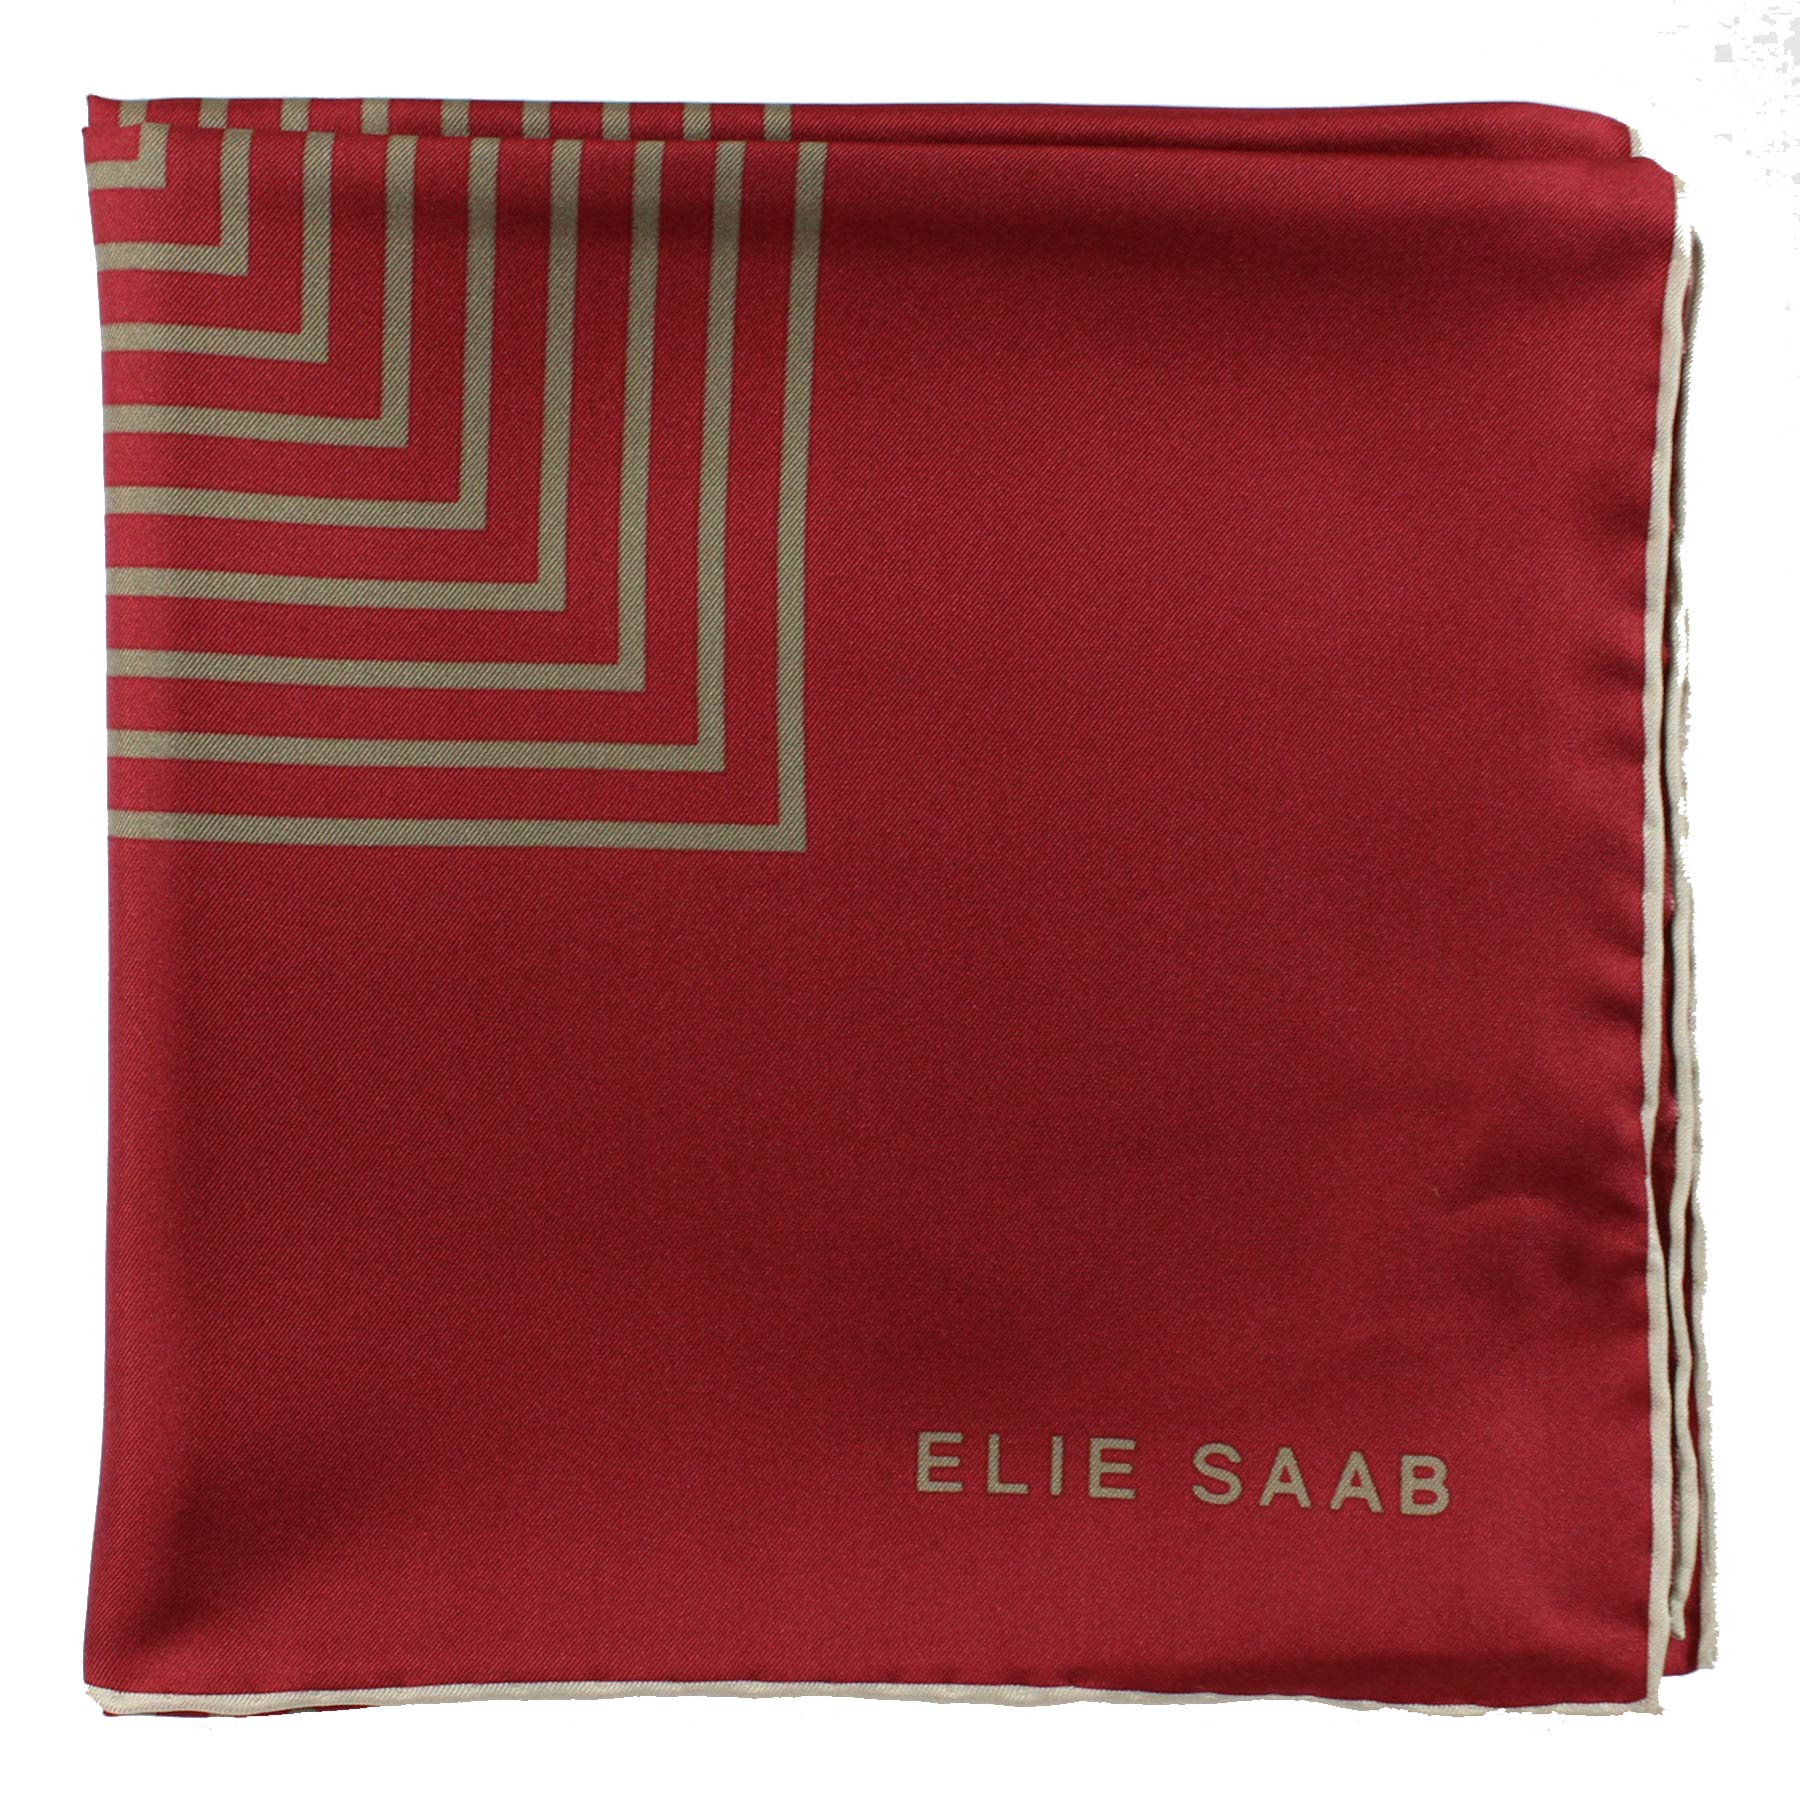 Elie Saab Scarf Maroon Gray Design - Twill Silk Foulard